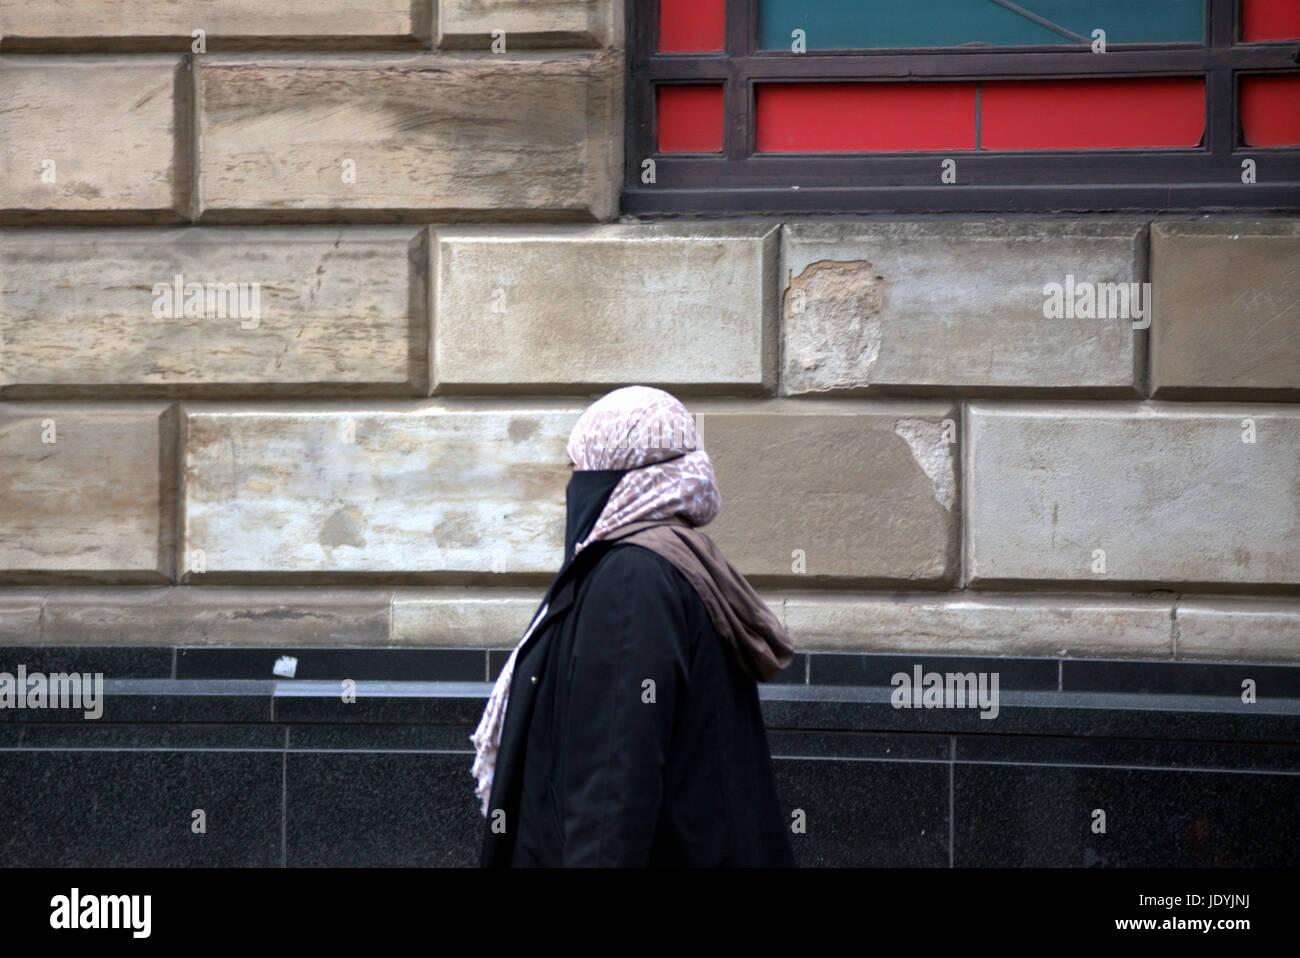 Asiatische Familie Flüchtling Hijab Schal auf Straße in der UK alltägliche Szene Gesicht mit Schleier bedeckt gekleidet Stockfoto